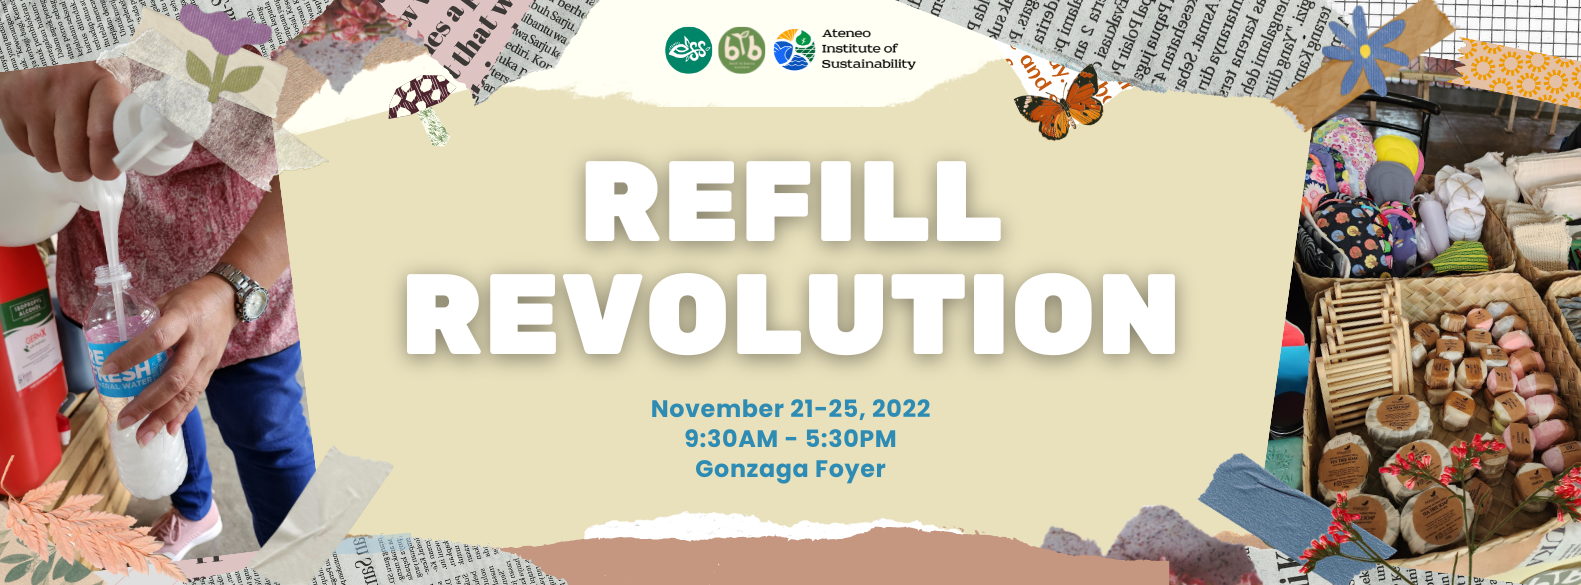 Refill Revolution Banner November